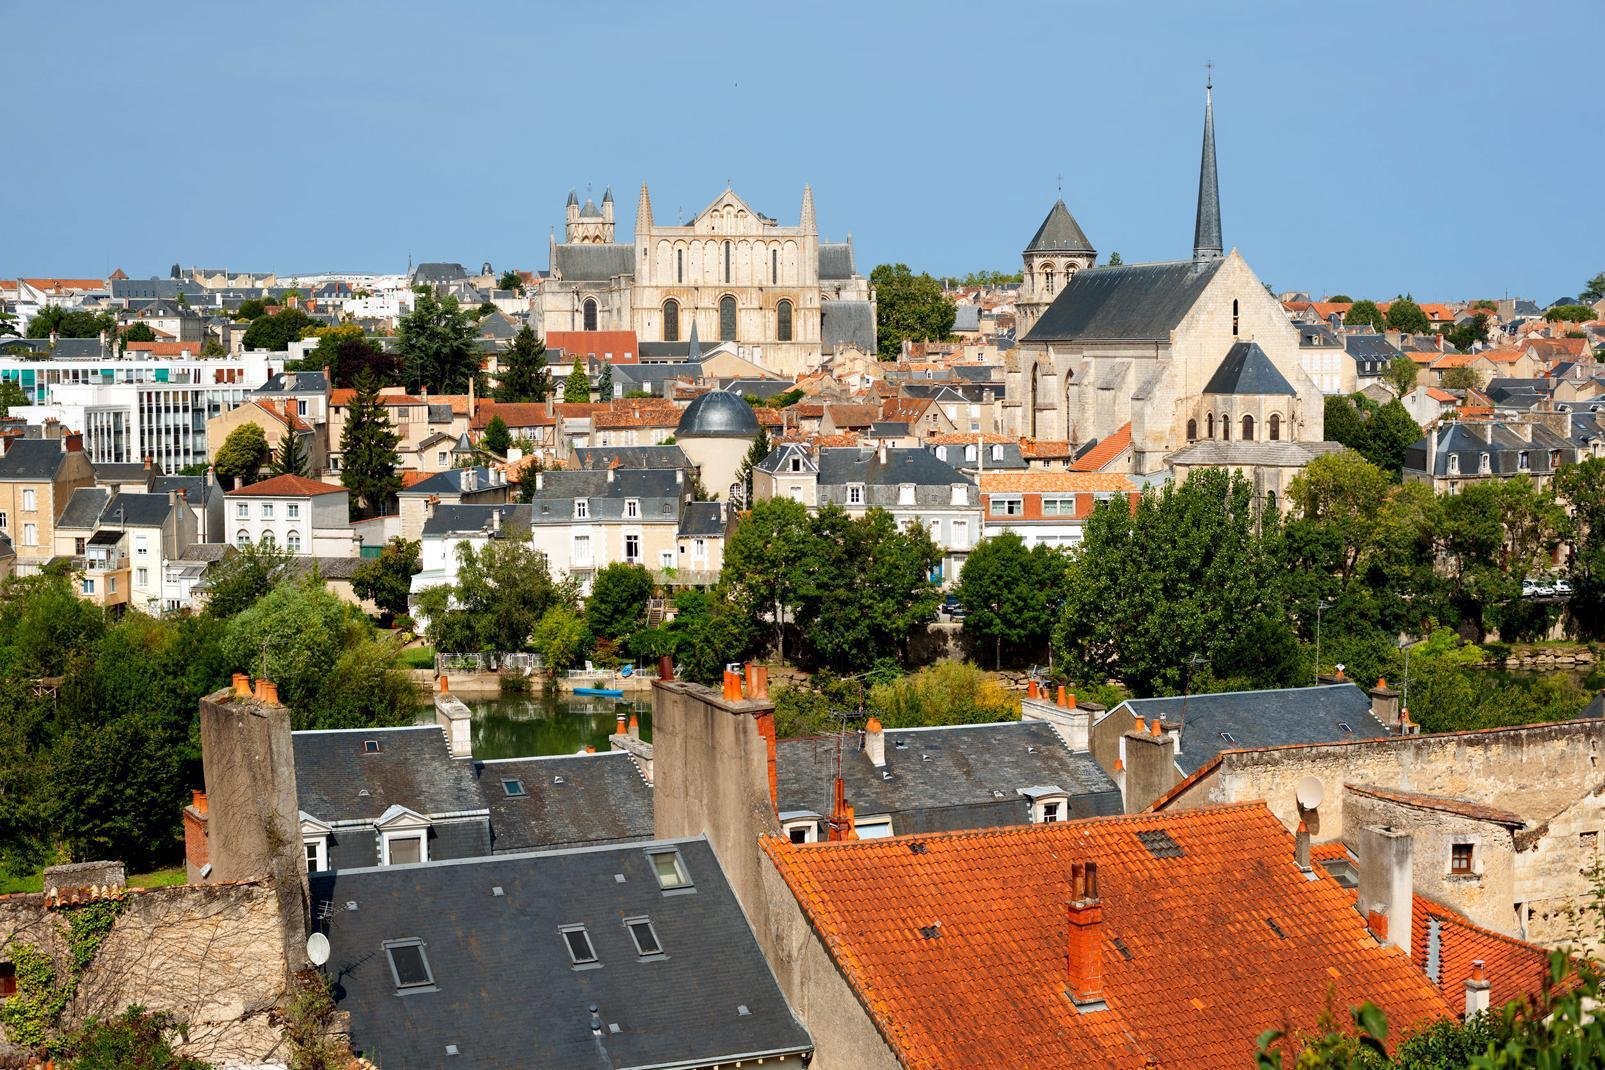 Die Hauptstadt der Region Poitou-Charentes auf halbem Wege zwischen Paris und Bordeaux, die einst "Lemonum" genannt wurde, liegt auf einem Gebirgsvorsprung zwischen den Flüssen Clain und Boivre.  
Die Stadt erlangte mit der Schlacht von Tours und Poitiers Berühmtheit, bei der Karl Martell den aus Spanien einfallenden Mauren Einhalt gebot. Die "Stadt der 100 Glockentürme" wartet mit einem außergewöhnlich ...